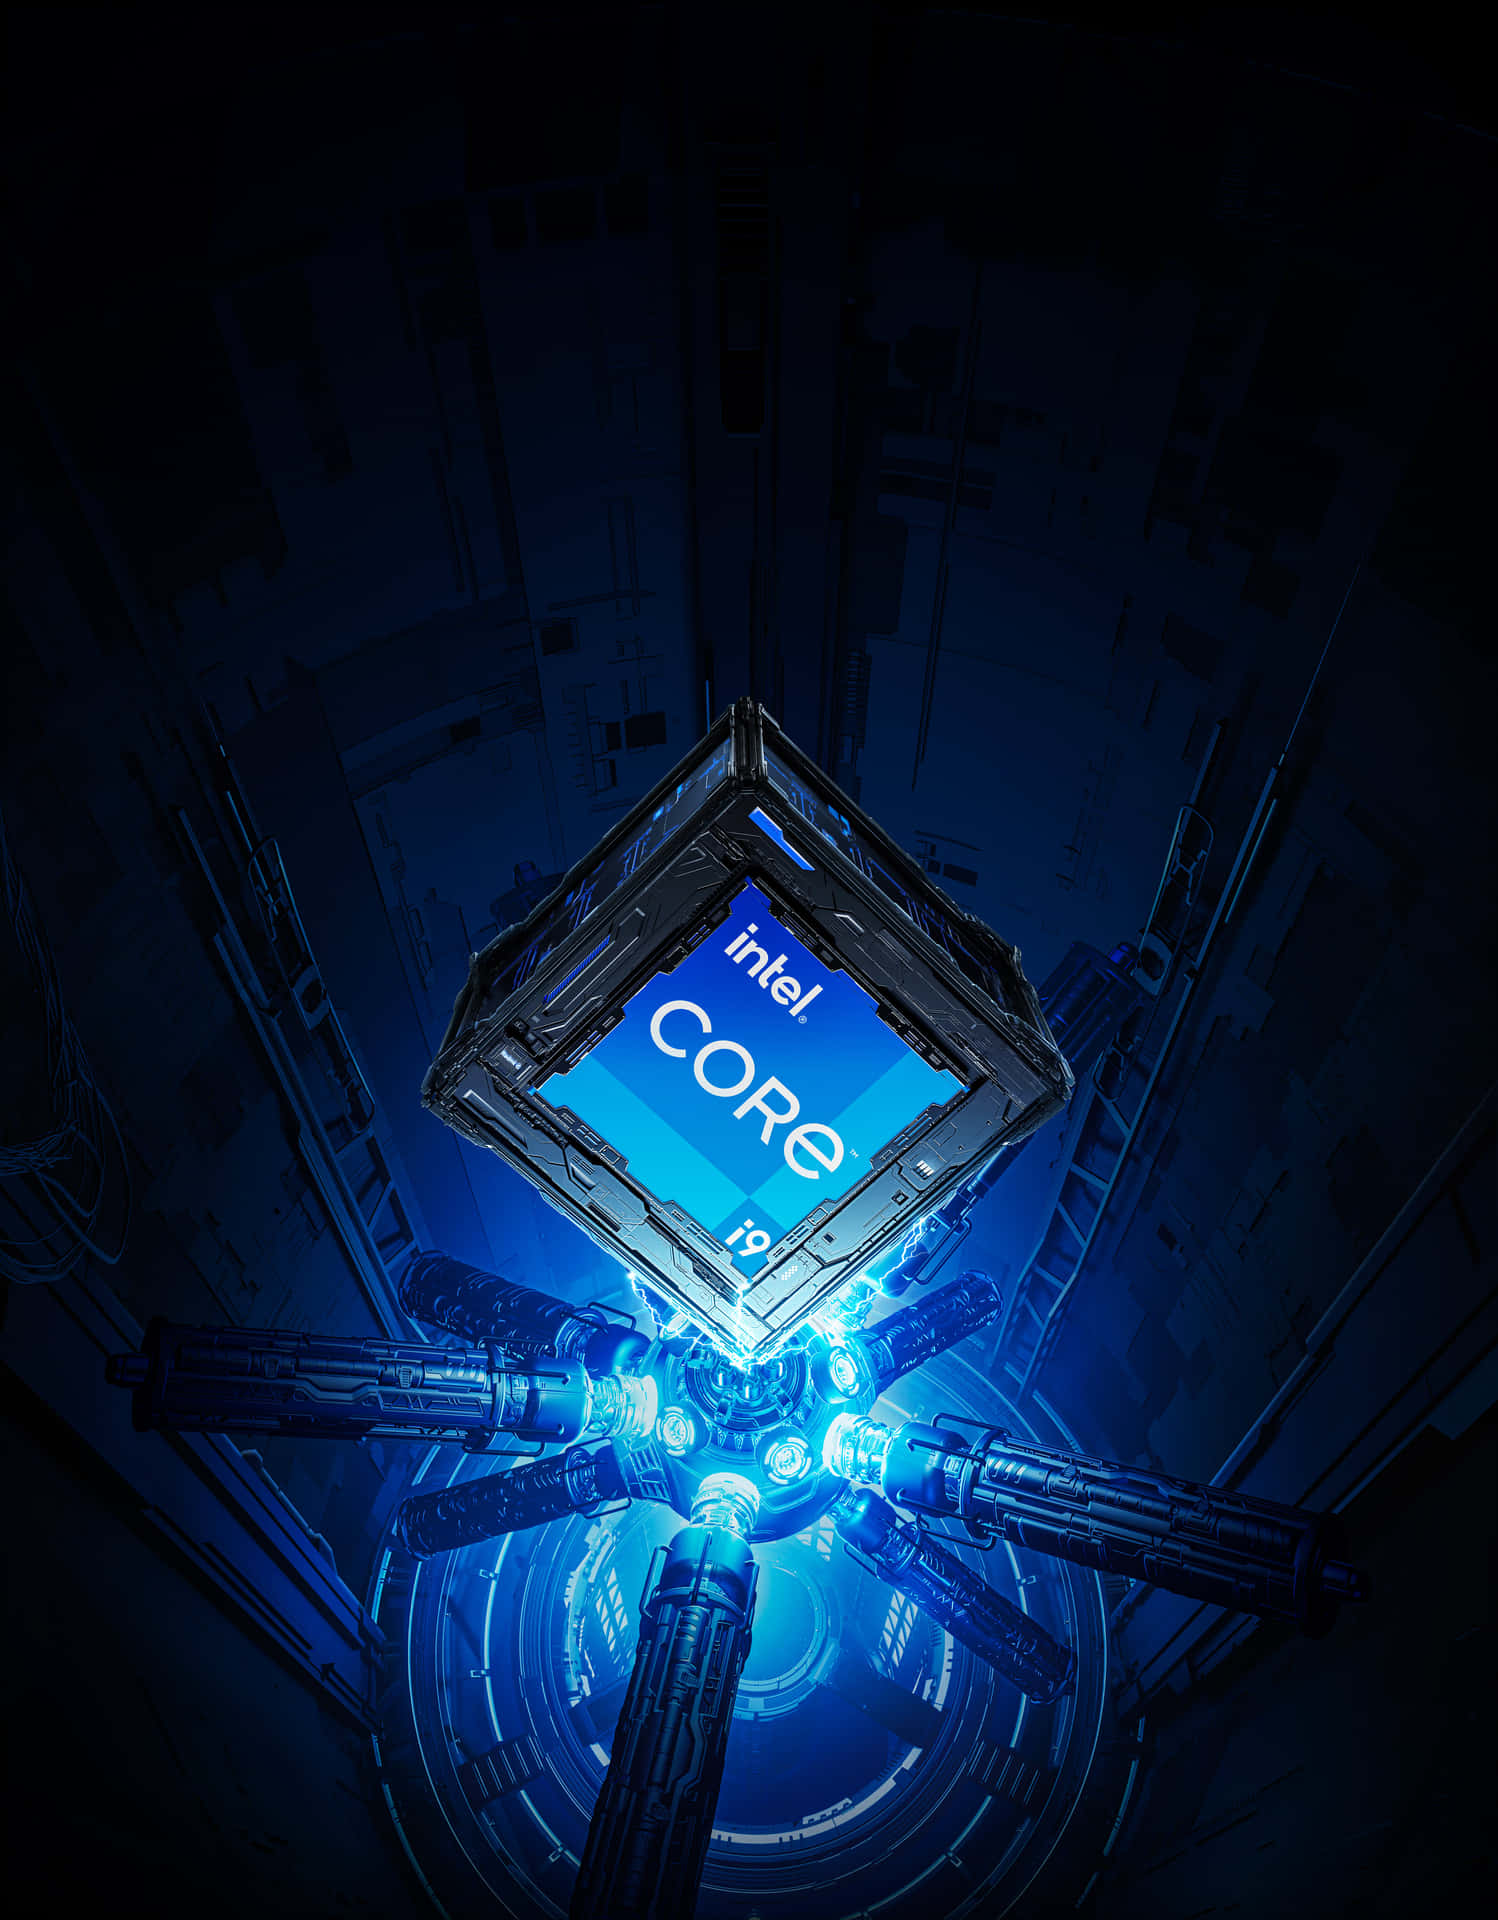 Intel Core Processor Futuristic Design Wallpaper